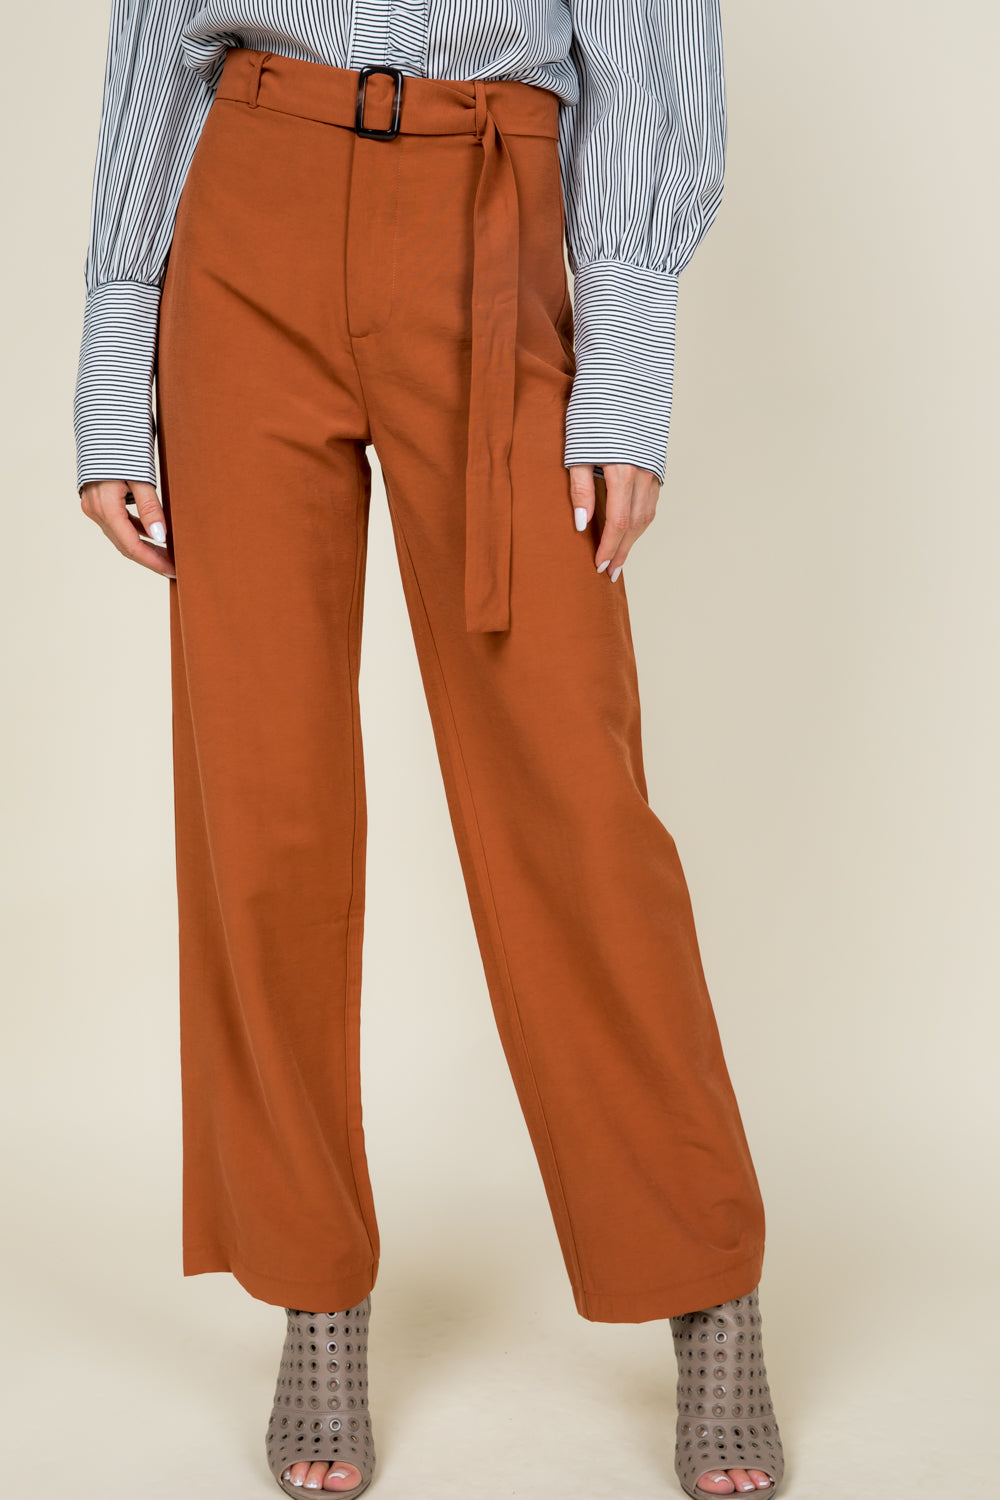 [$5/piece] Belted high waist pants